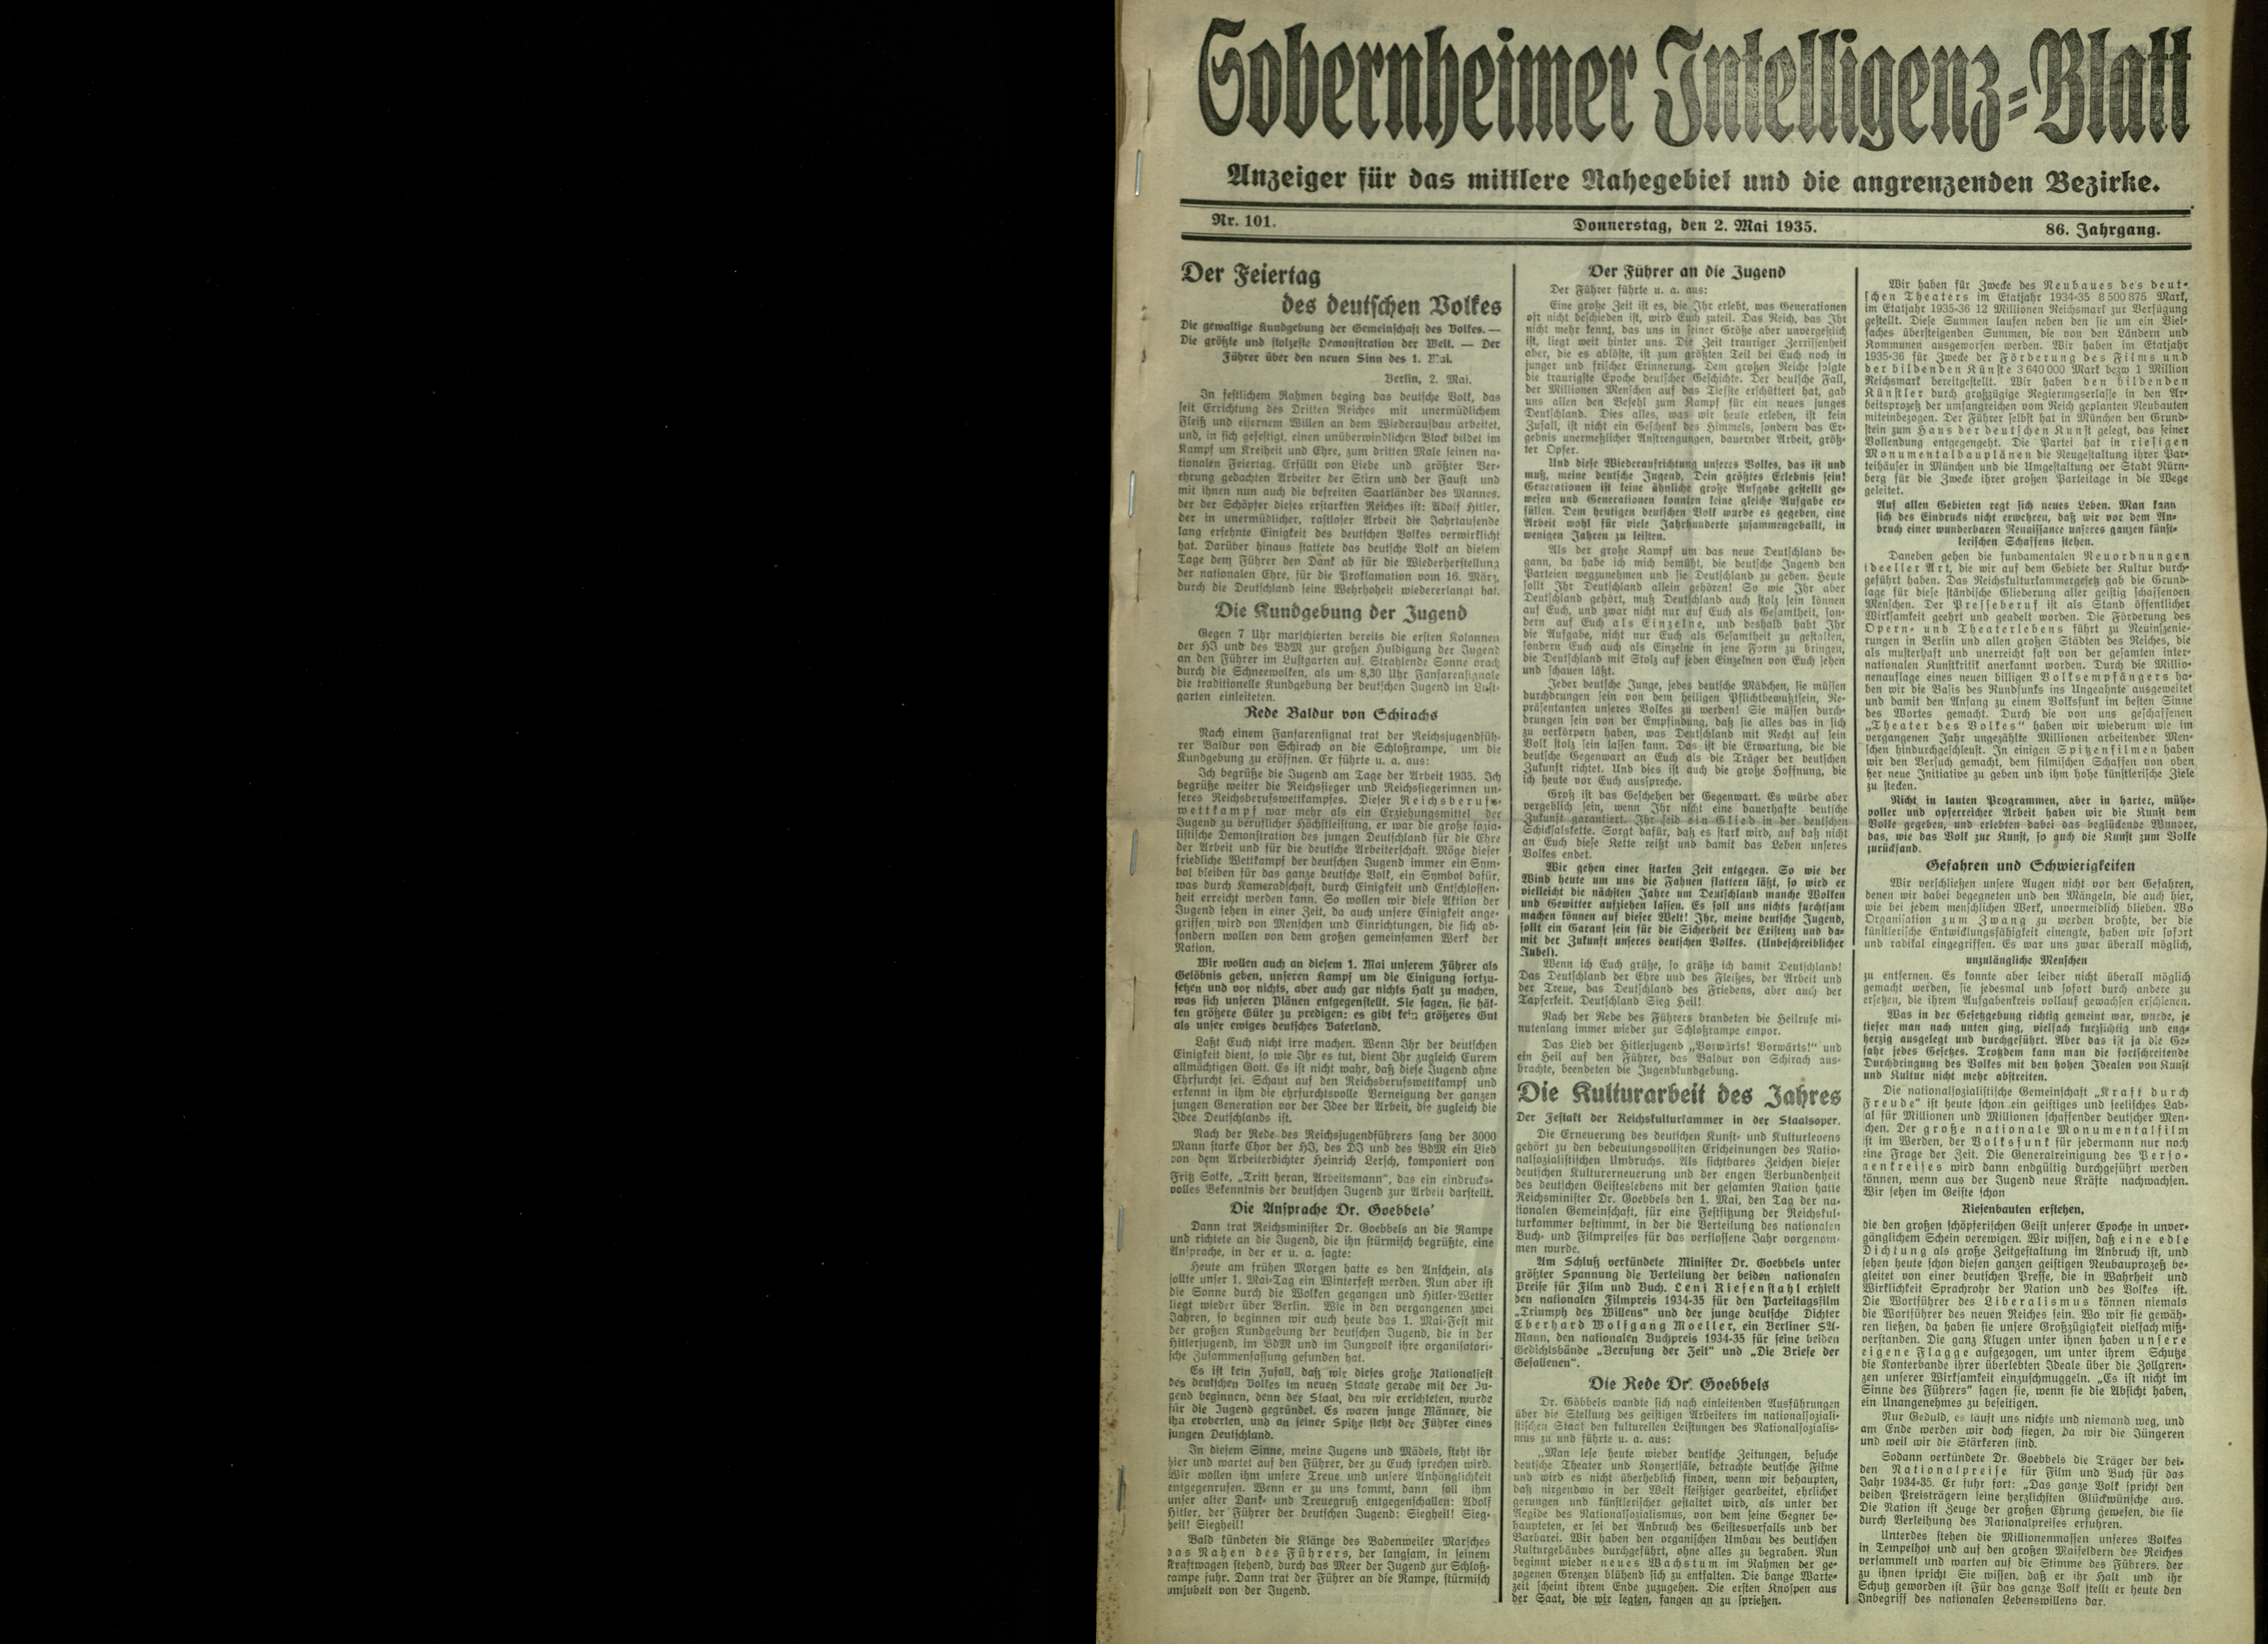 Zeitung: Sobernheimer Intelligenzblatt; Mai 1935, Jg. 86 Nr. 101 (Heimatmuseum Bad Sobernheim CC BY-NC-SA)